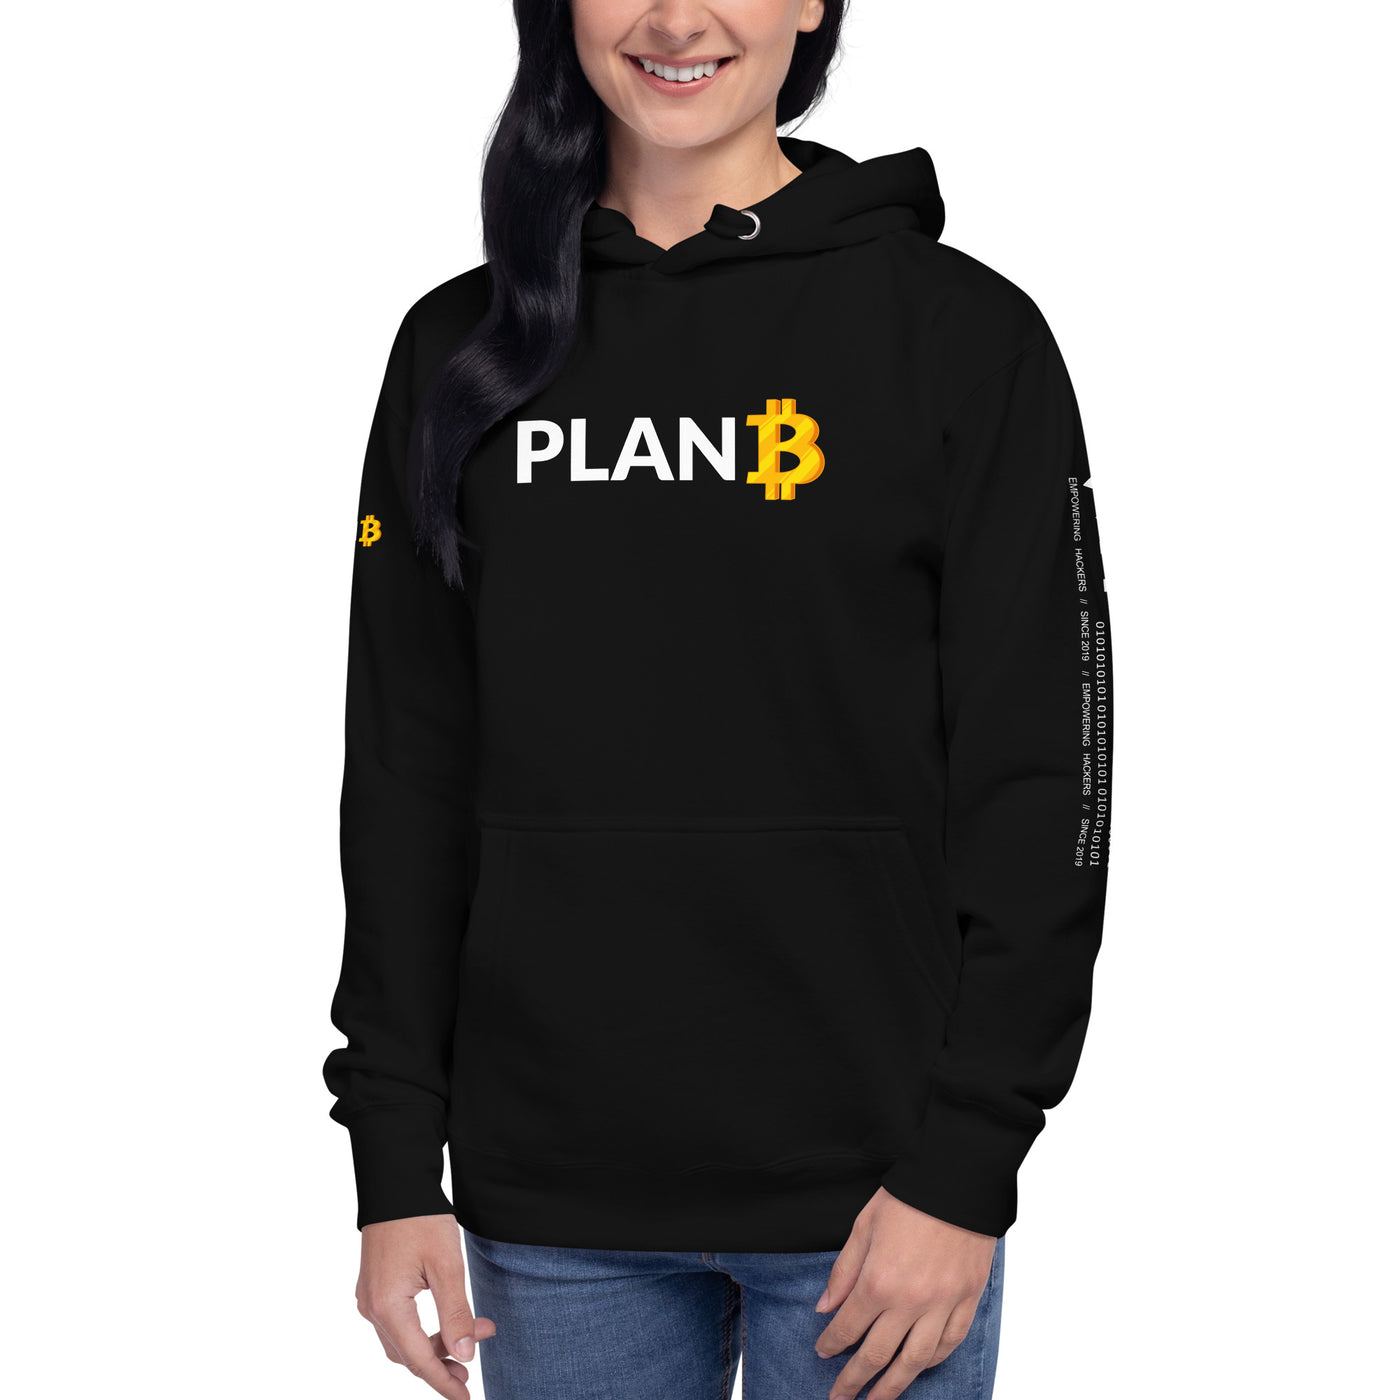 Plan B V1 - Unisex Hoodie